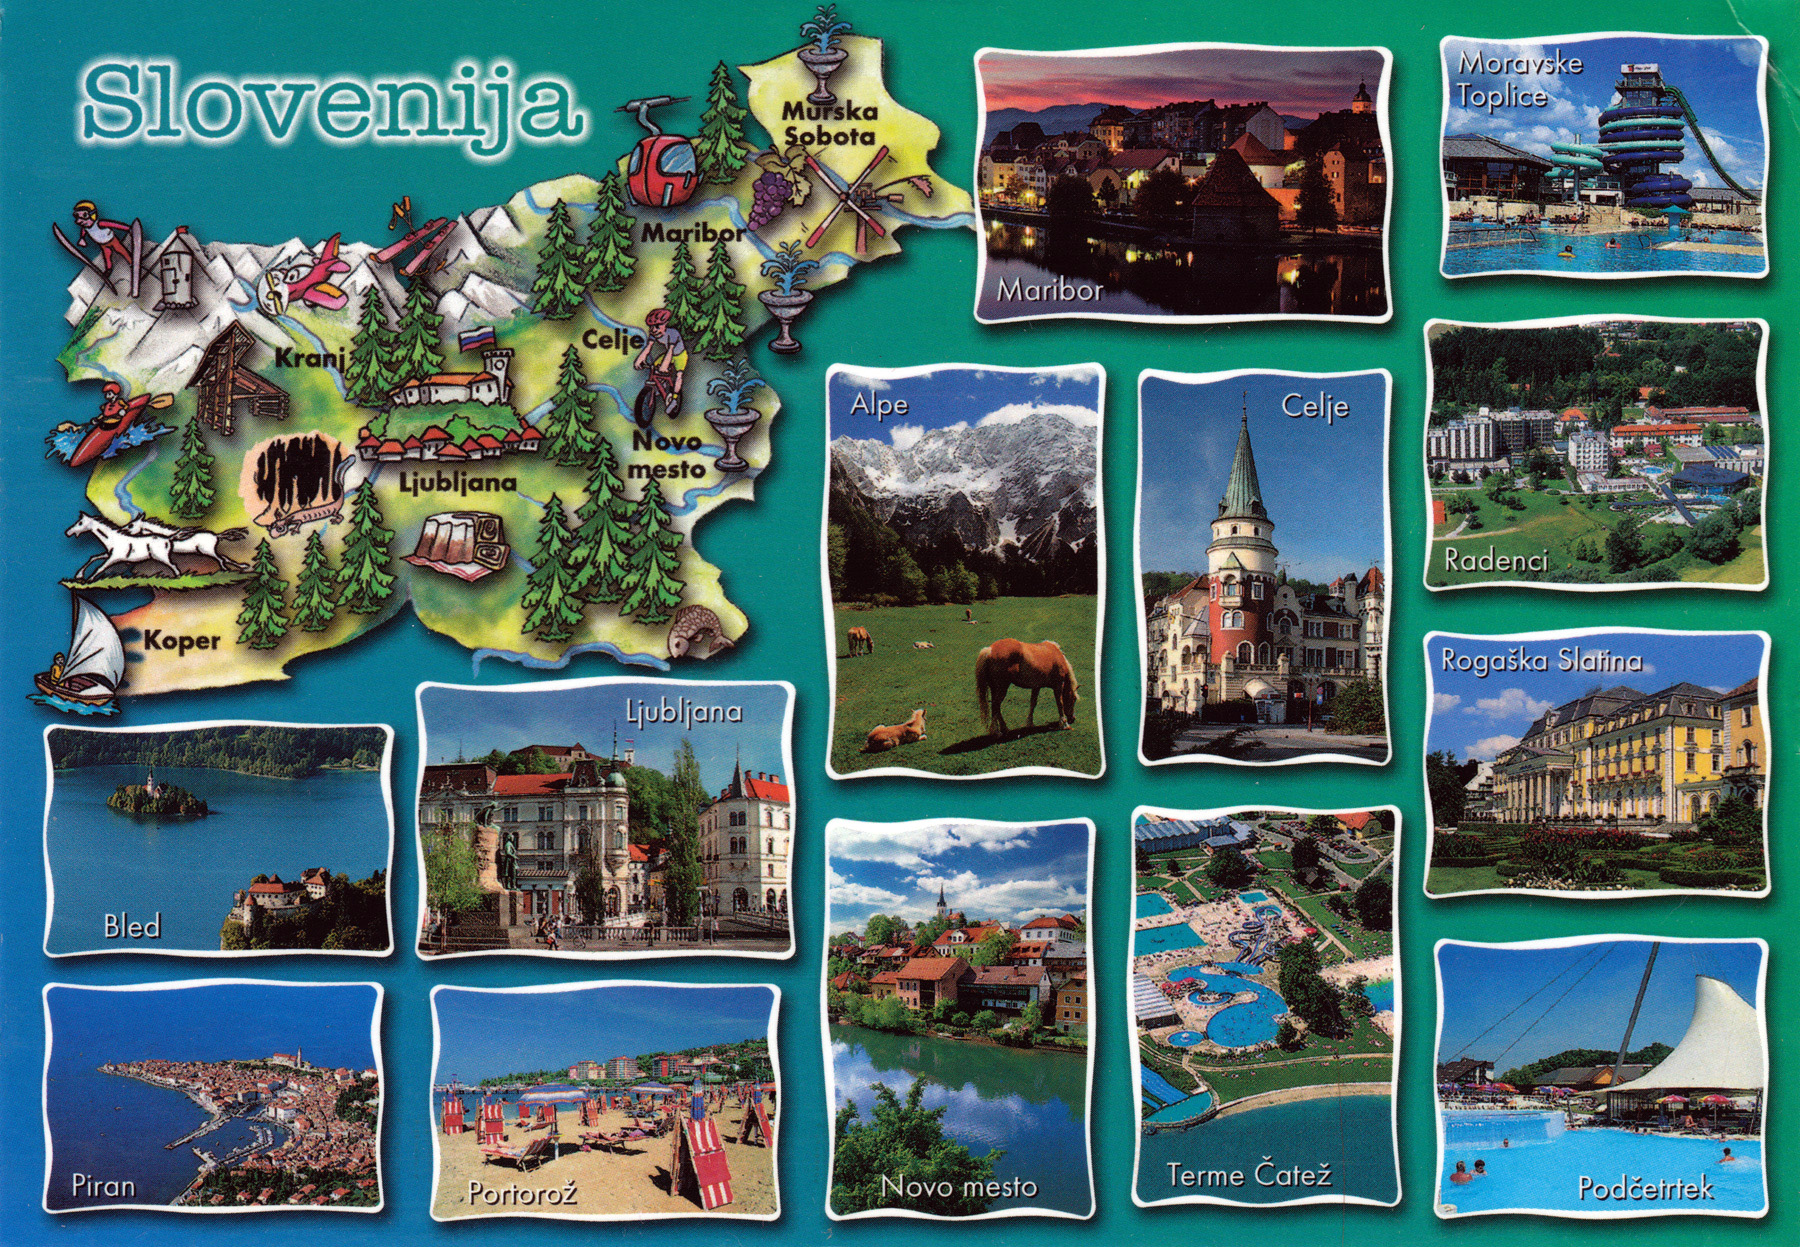 slovenia tourist map